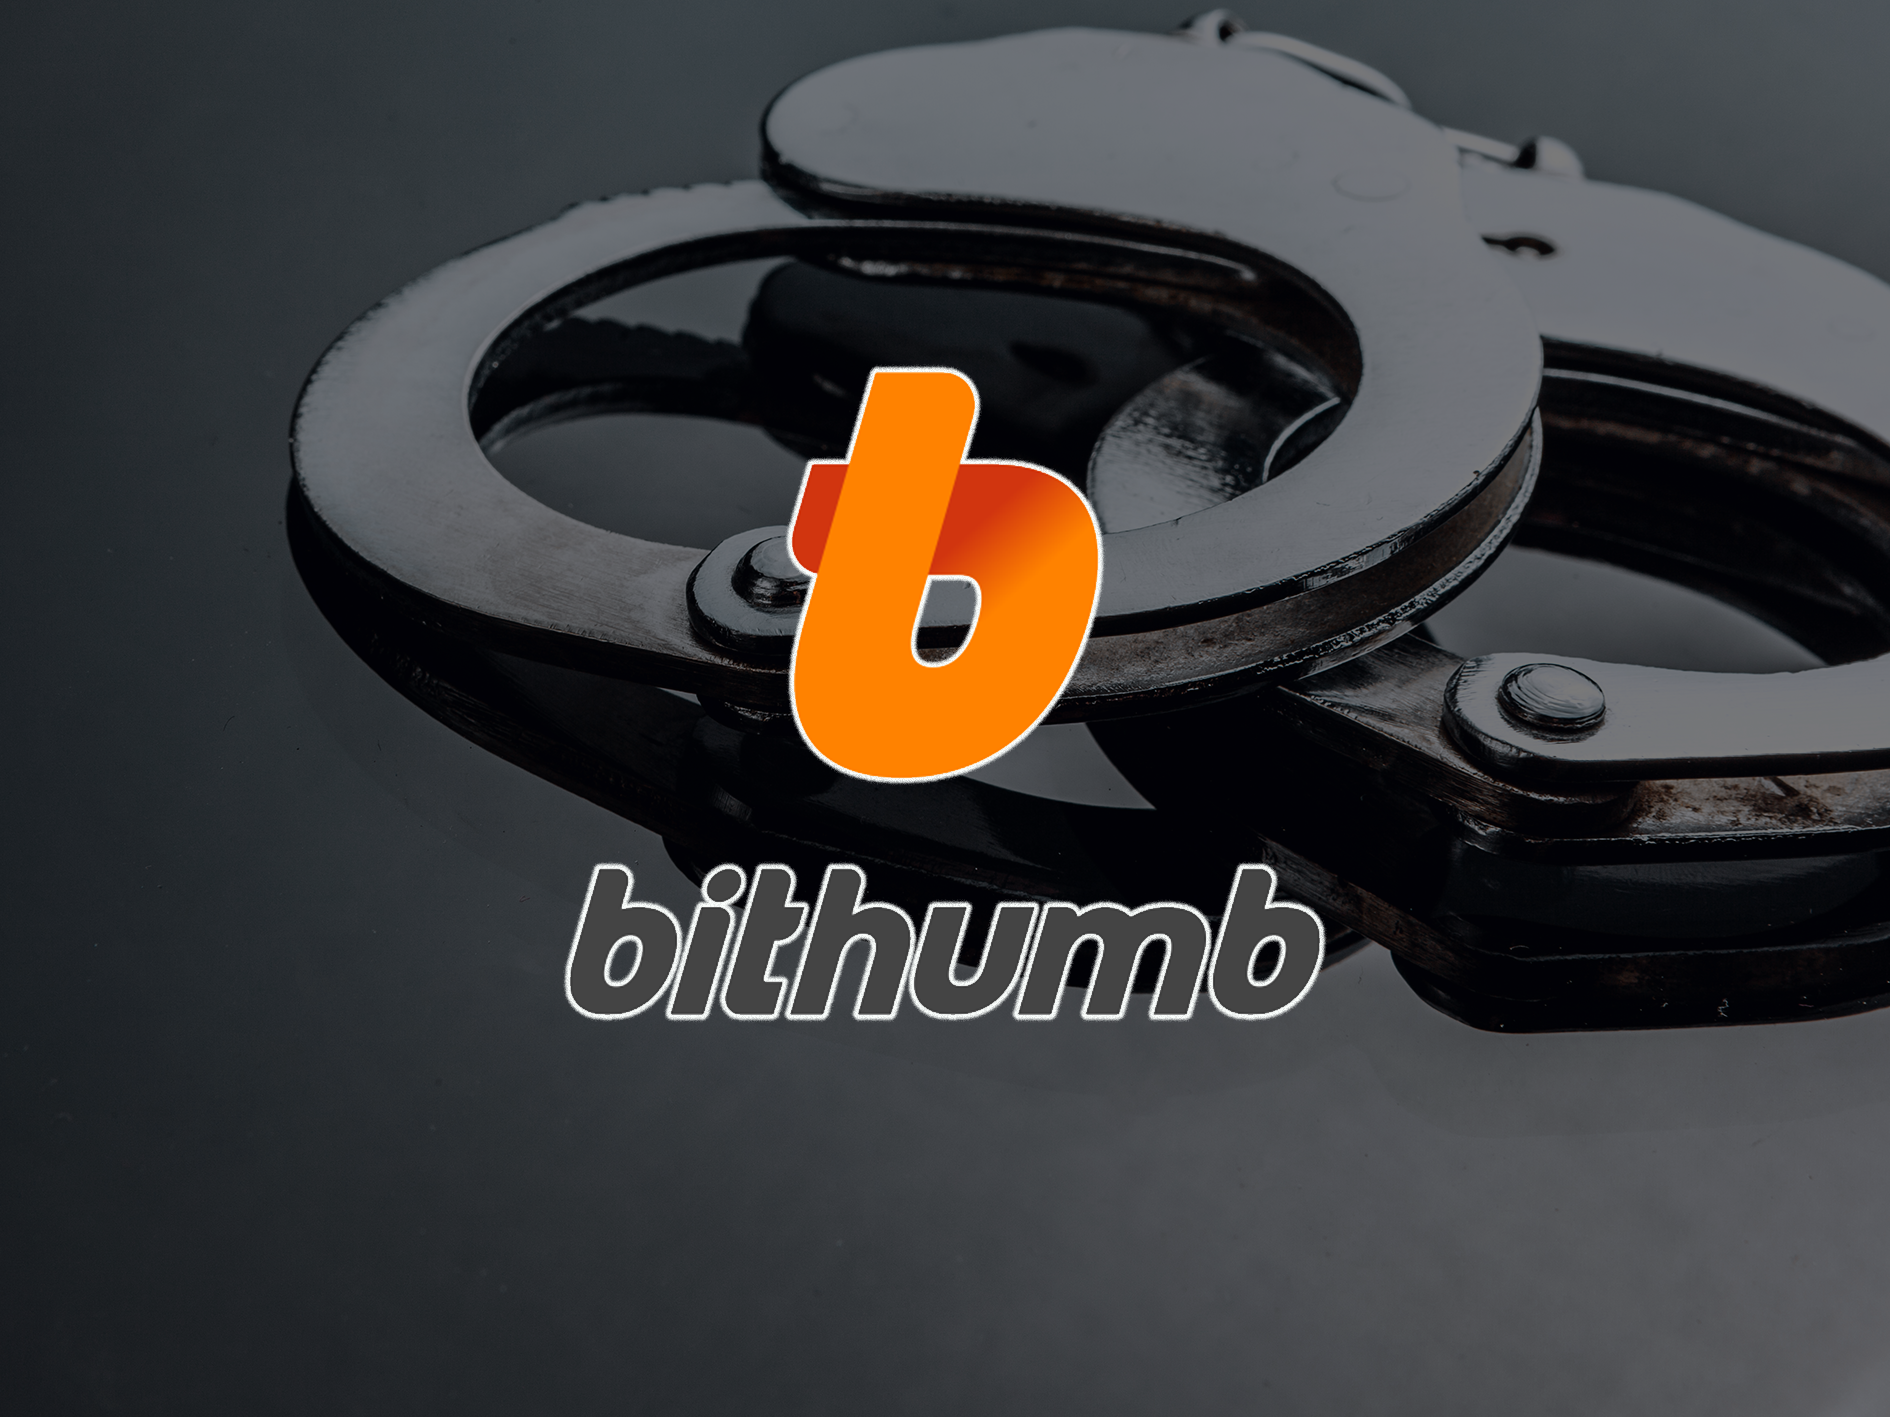 เกาหลีใต้จับกุมหัวหน้าการแลกเปลี่ยน crypto ของ Bithumb ในข้อหายักยอกเงินที่ถูกกล่าวหา